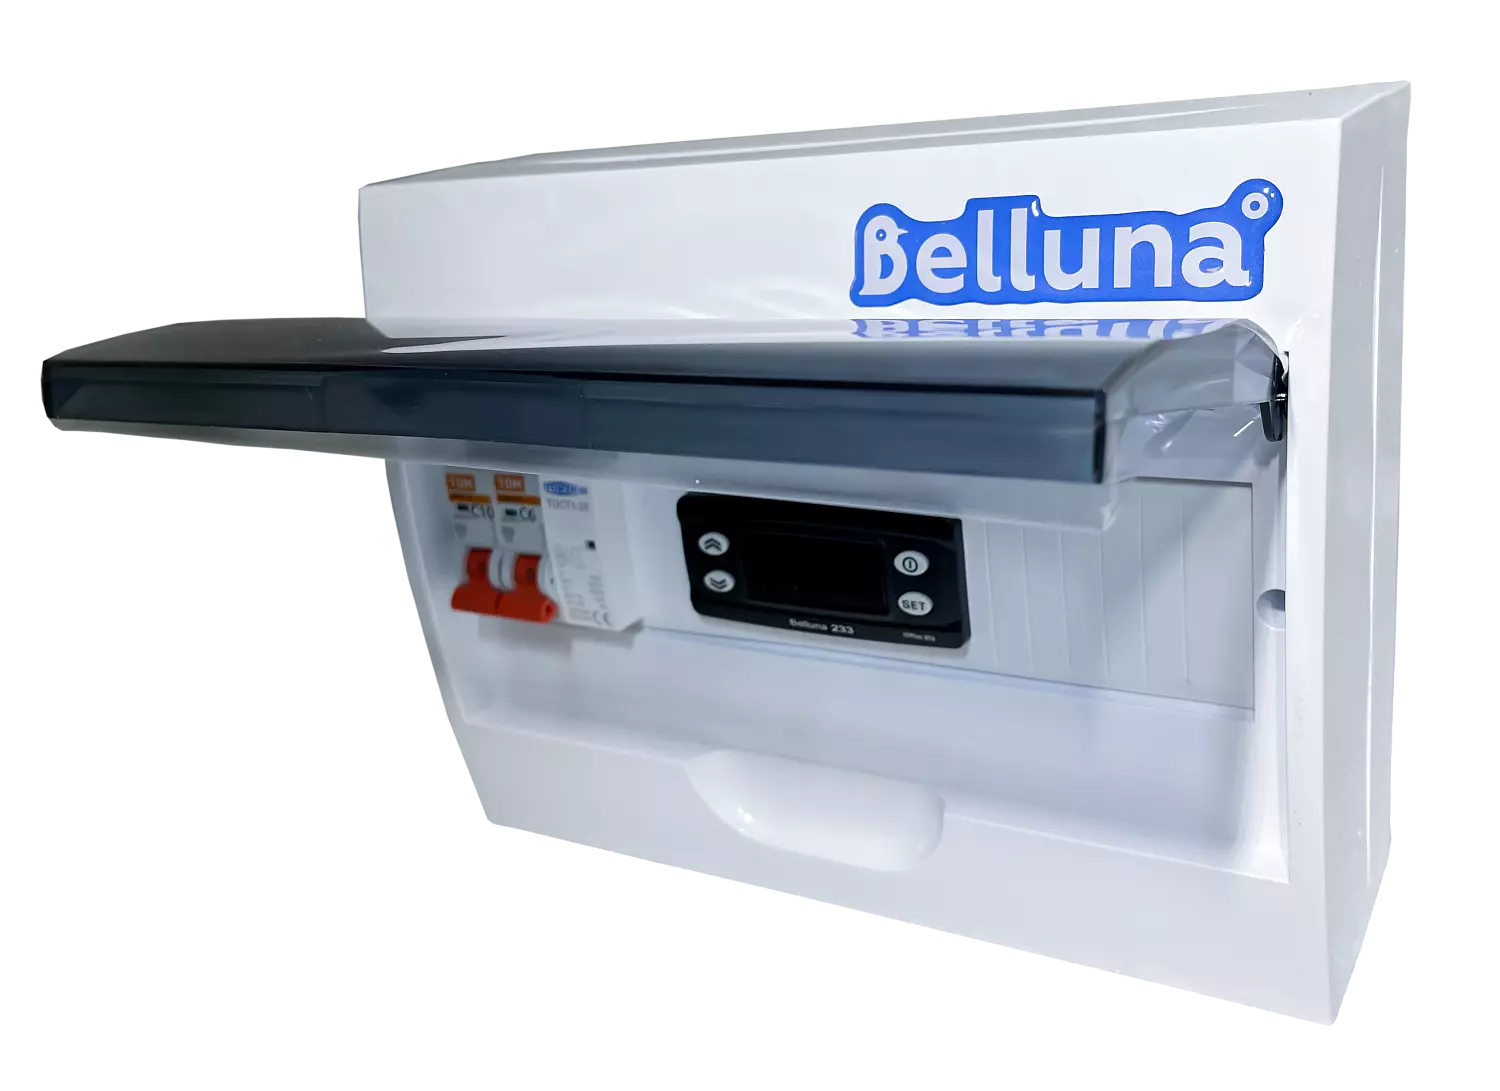 сплит-система Belluna U102-1 Пермь